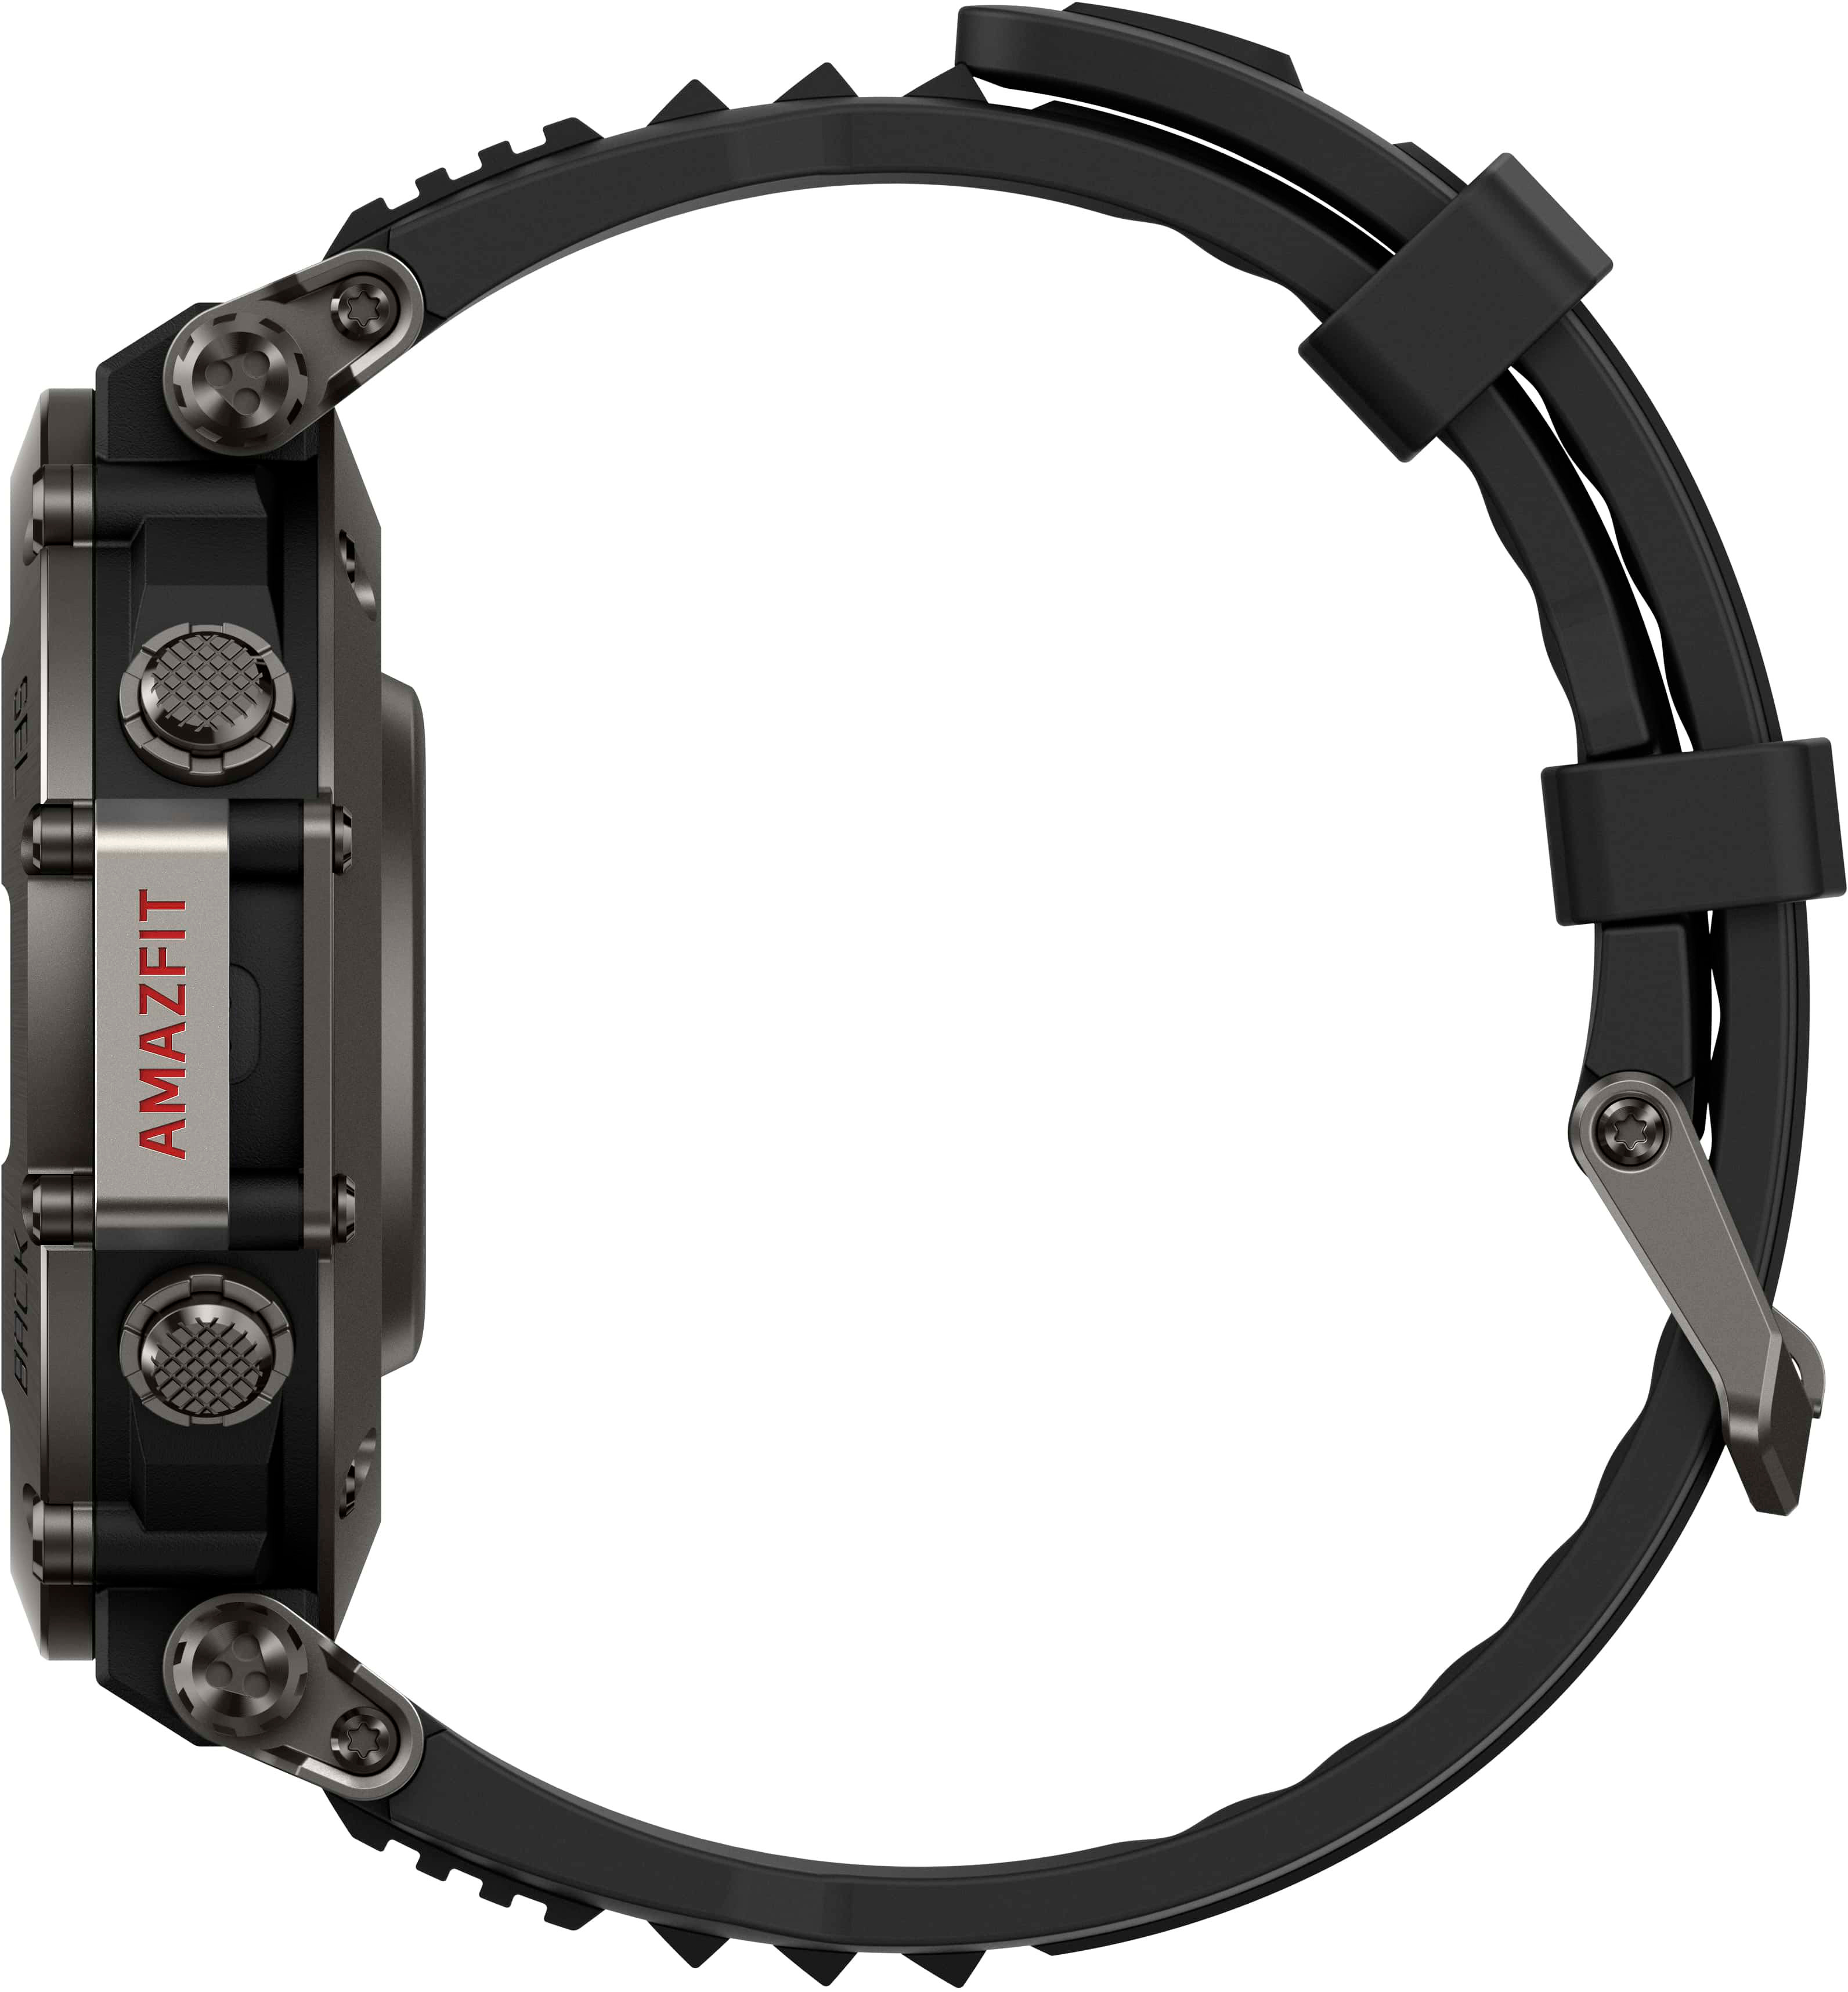 Amazfit T-rex Pro Smartwatch - Black : Target